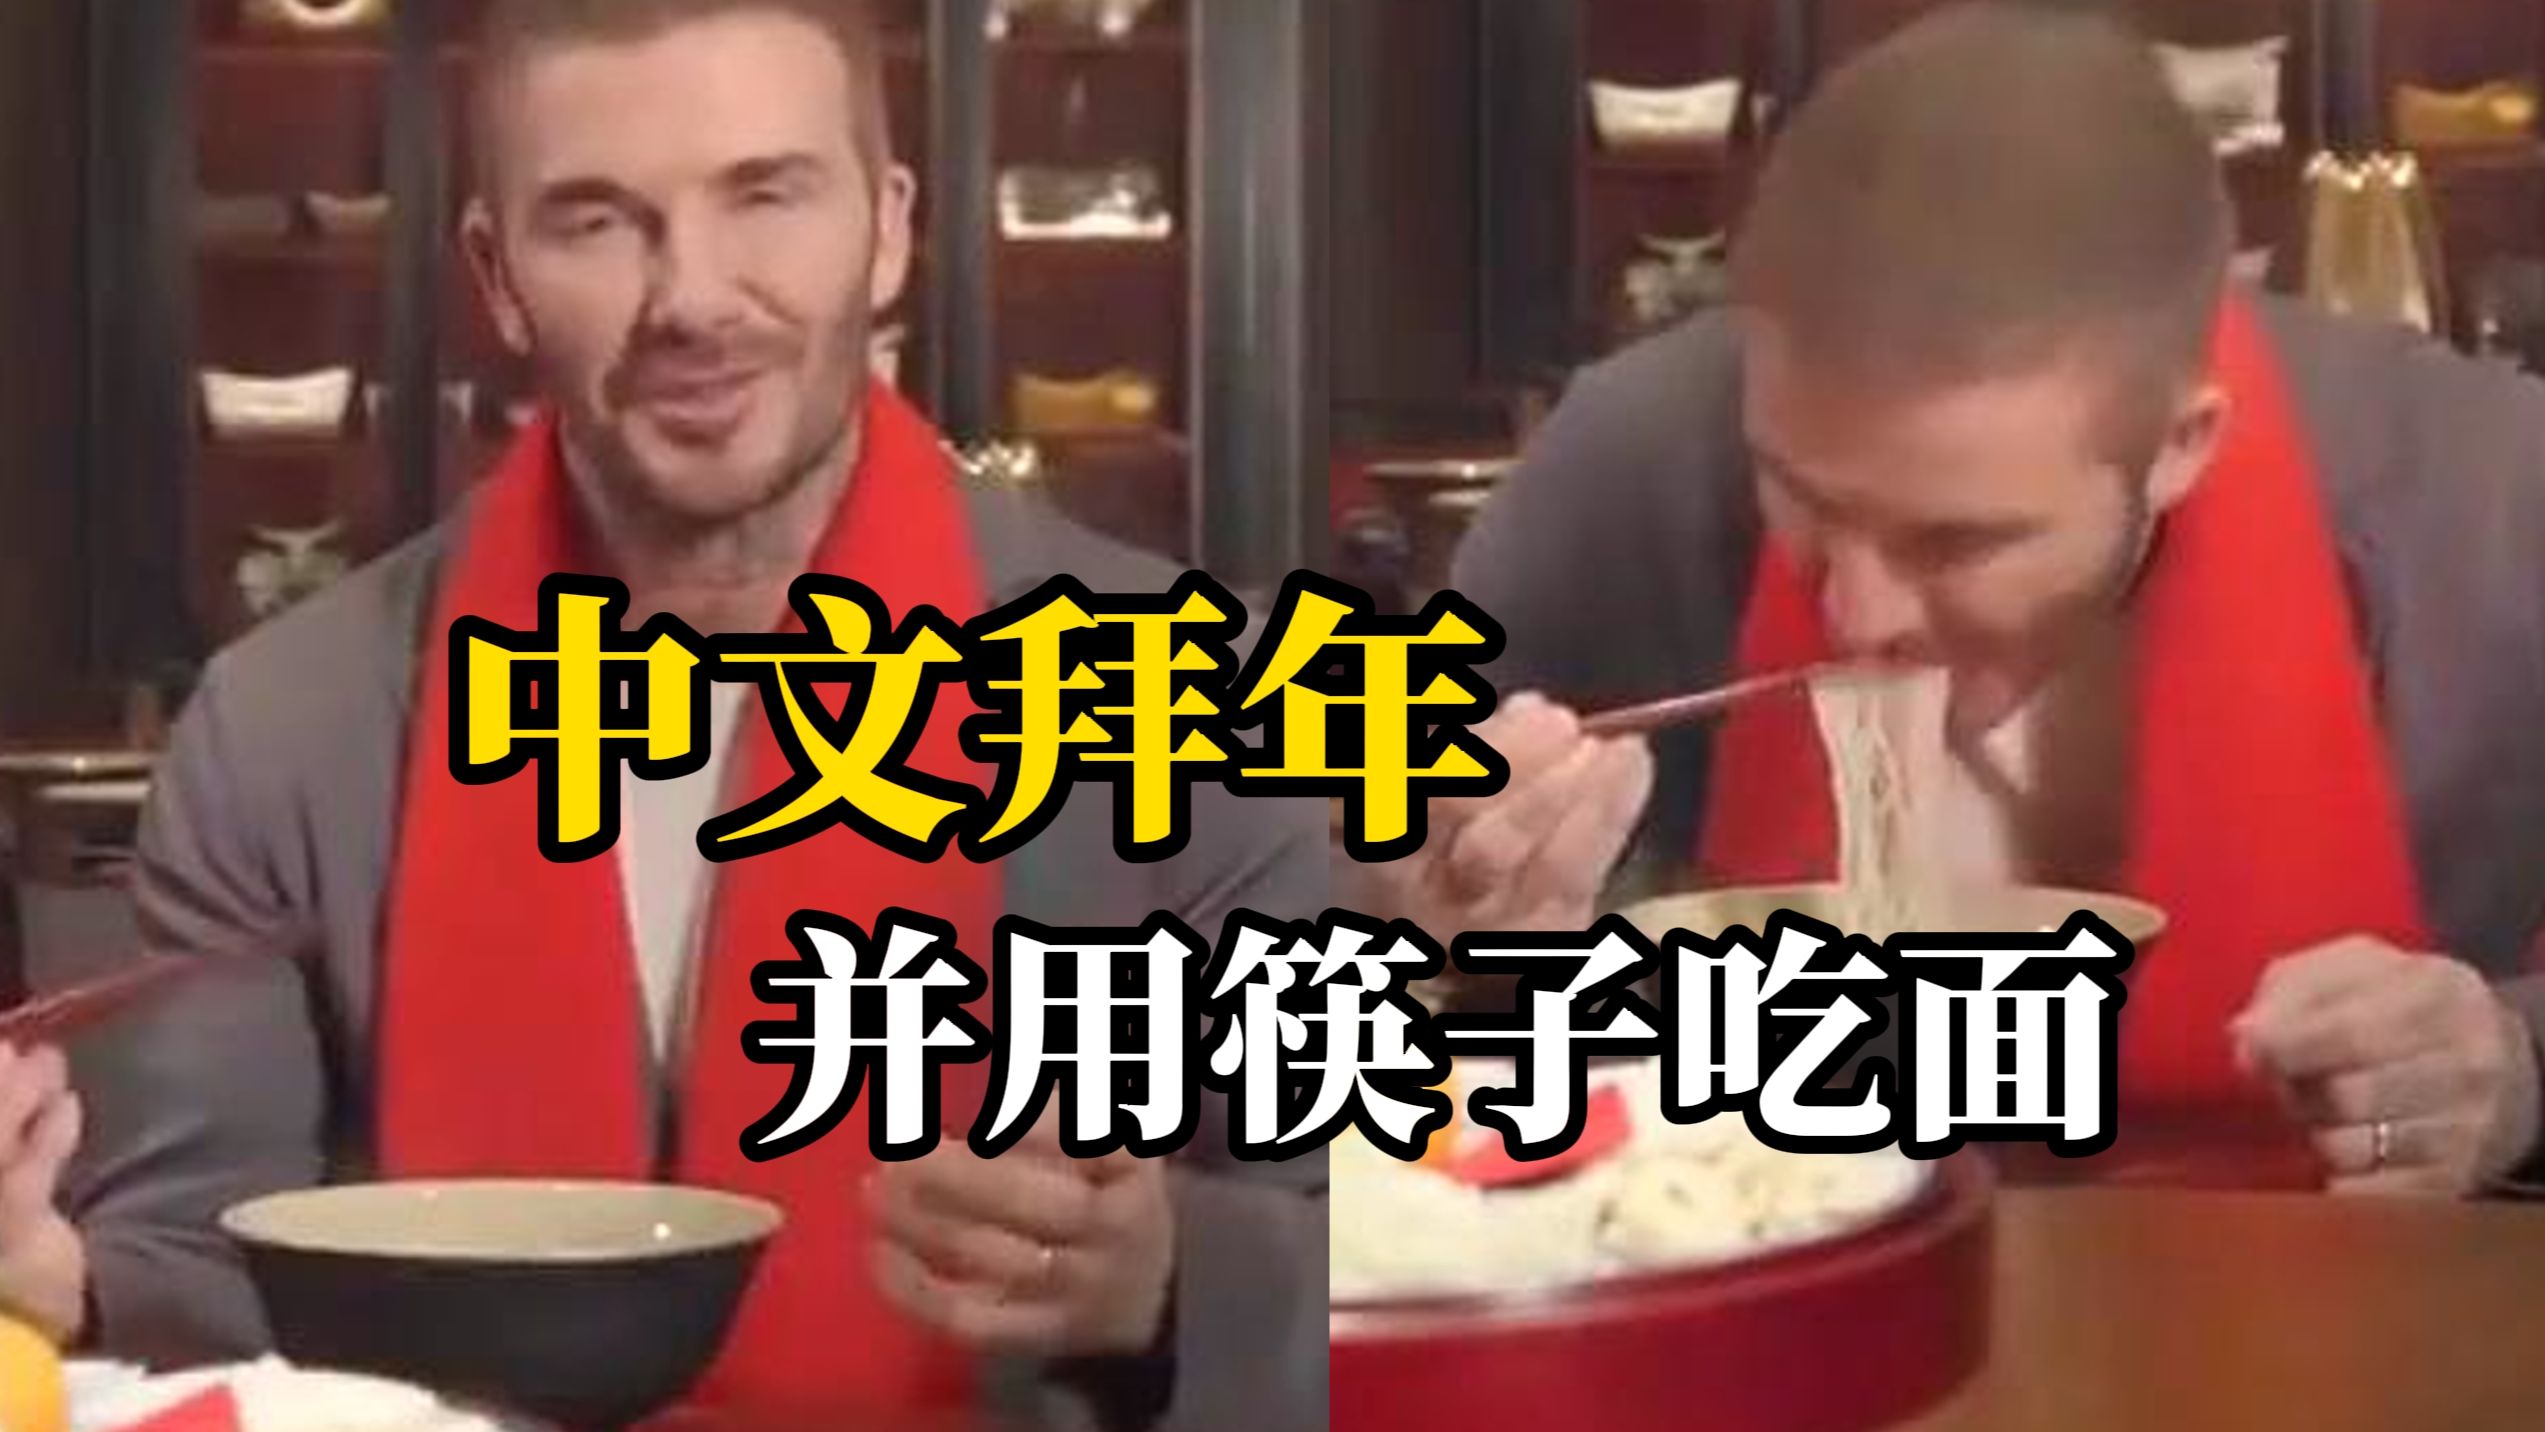 “梅西风波”后，贝克汉姆给中国网友拜年，用中文说“新春快乐”，还用筷子吃了一口面